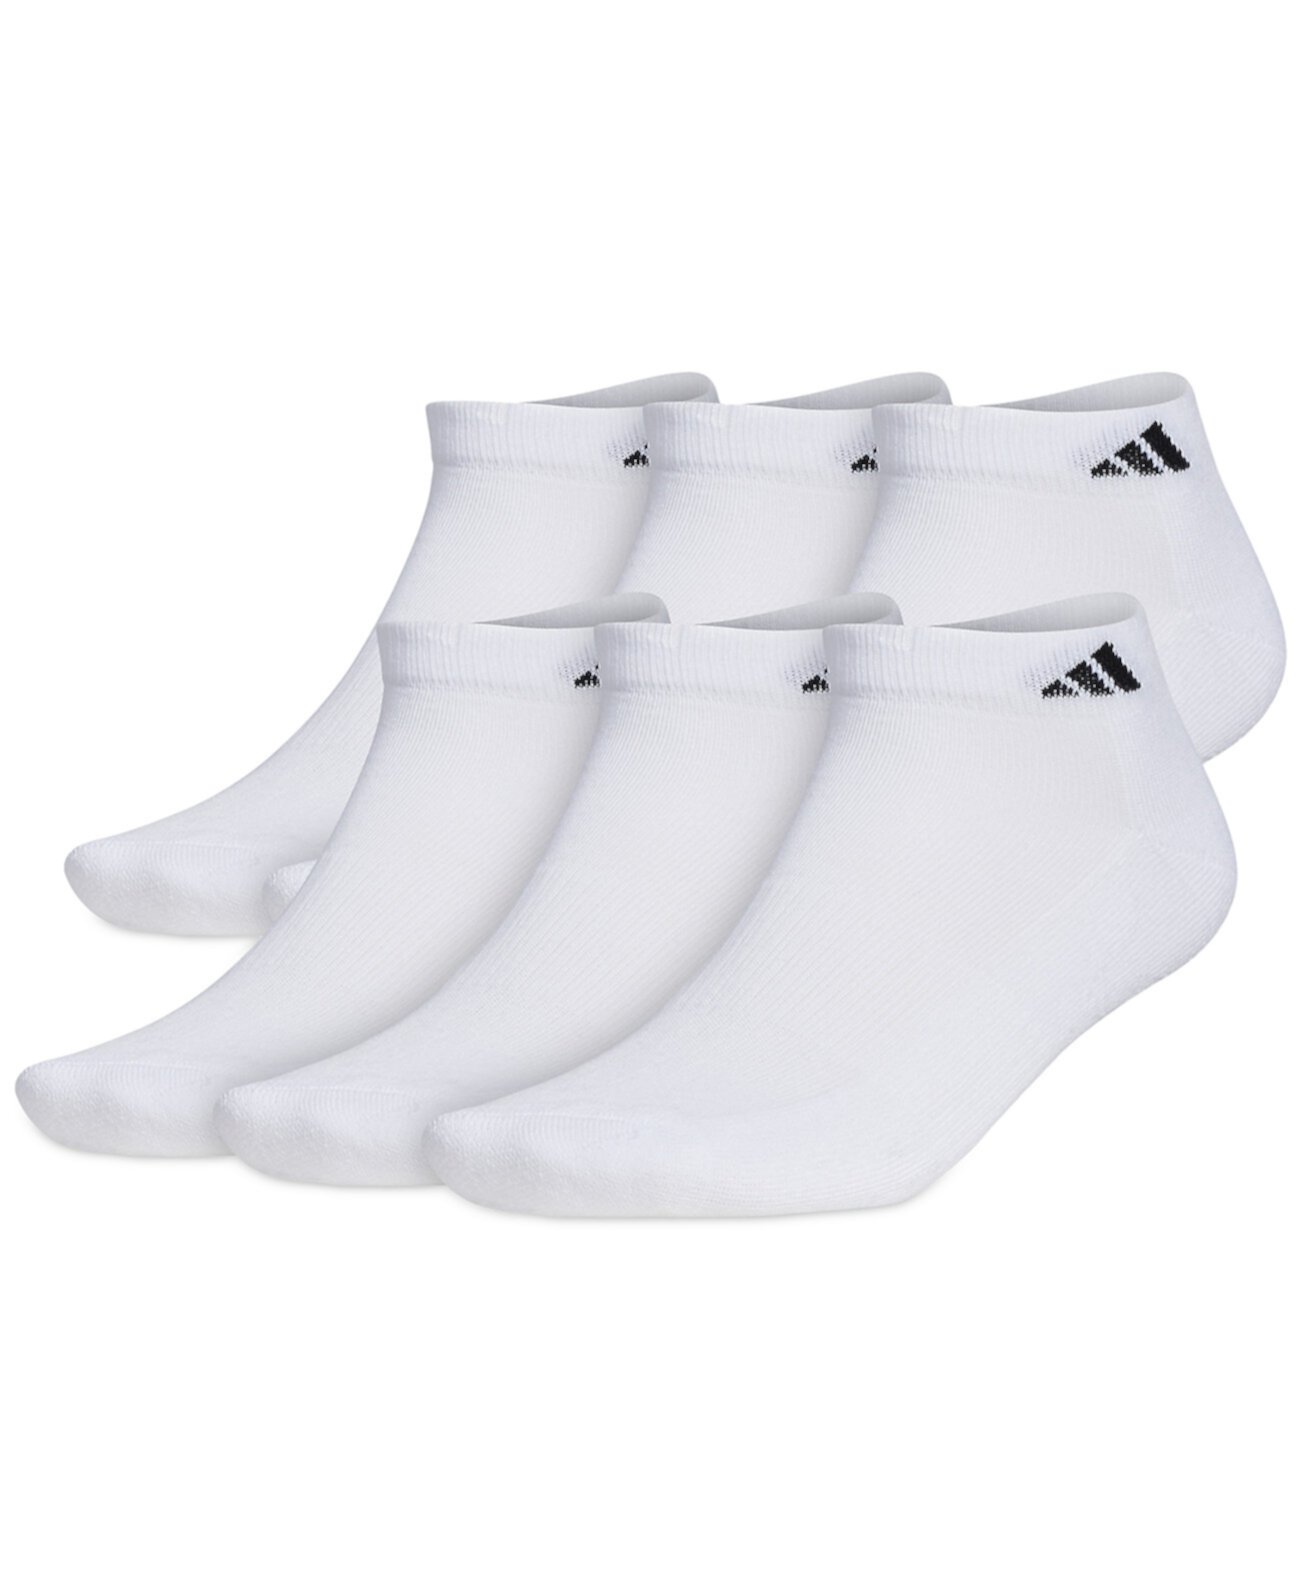 Мужские мягкие спортивные 6 носков с низким вырезом Adidas